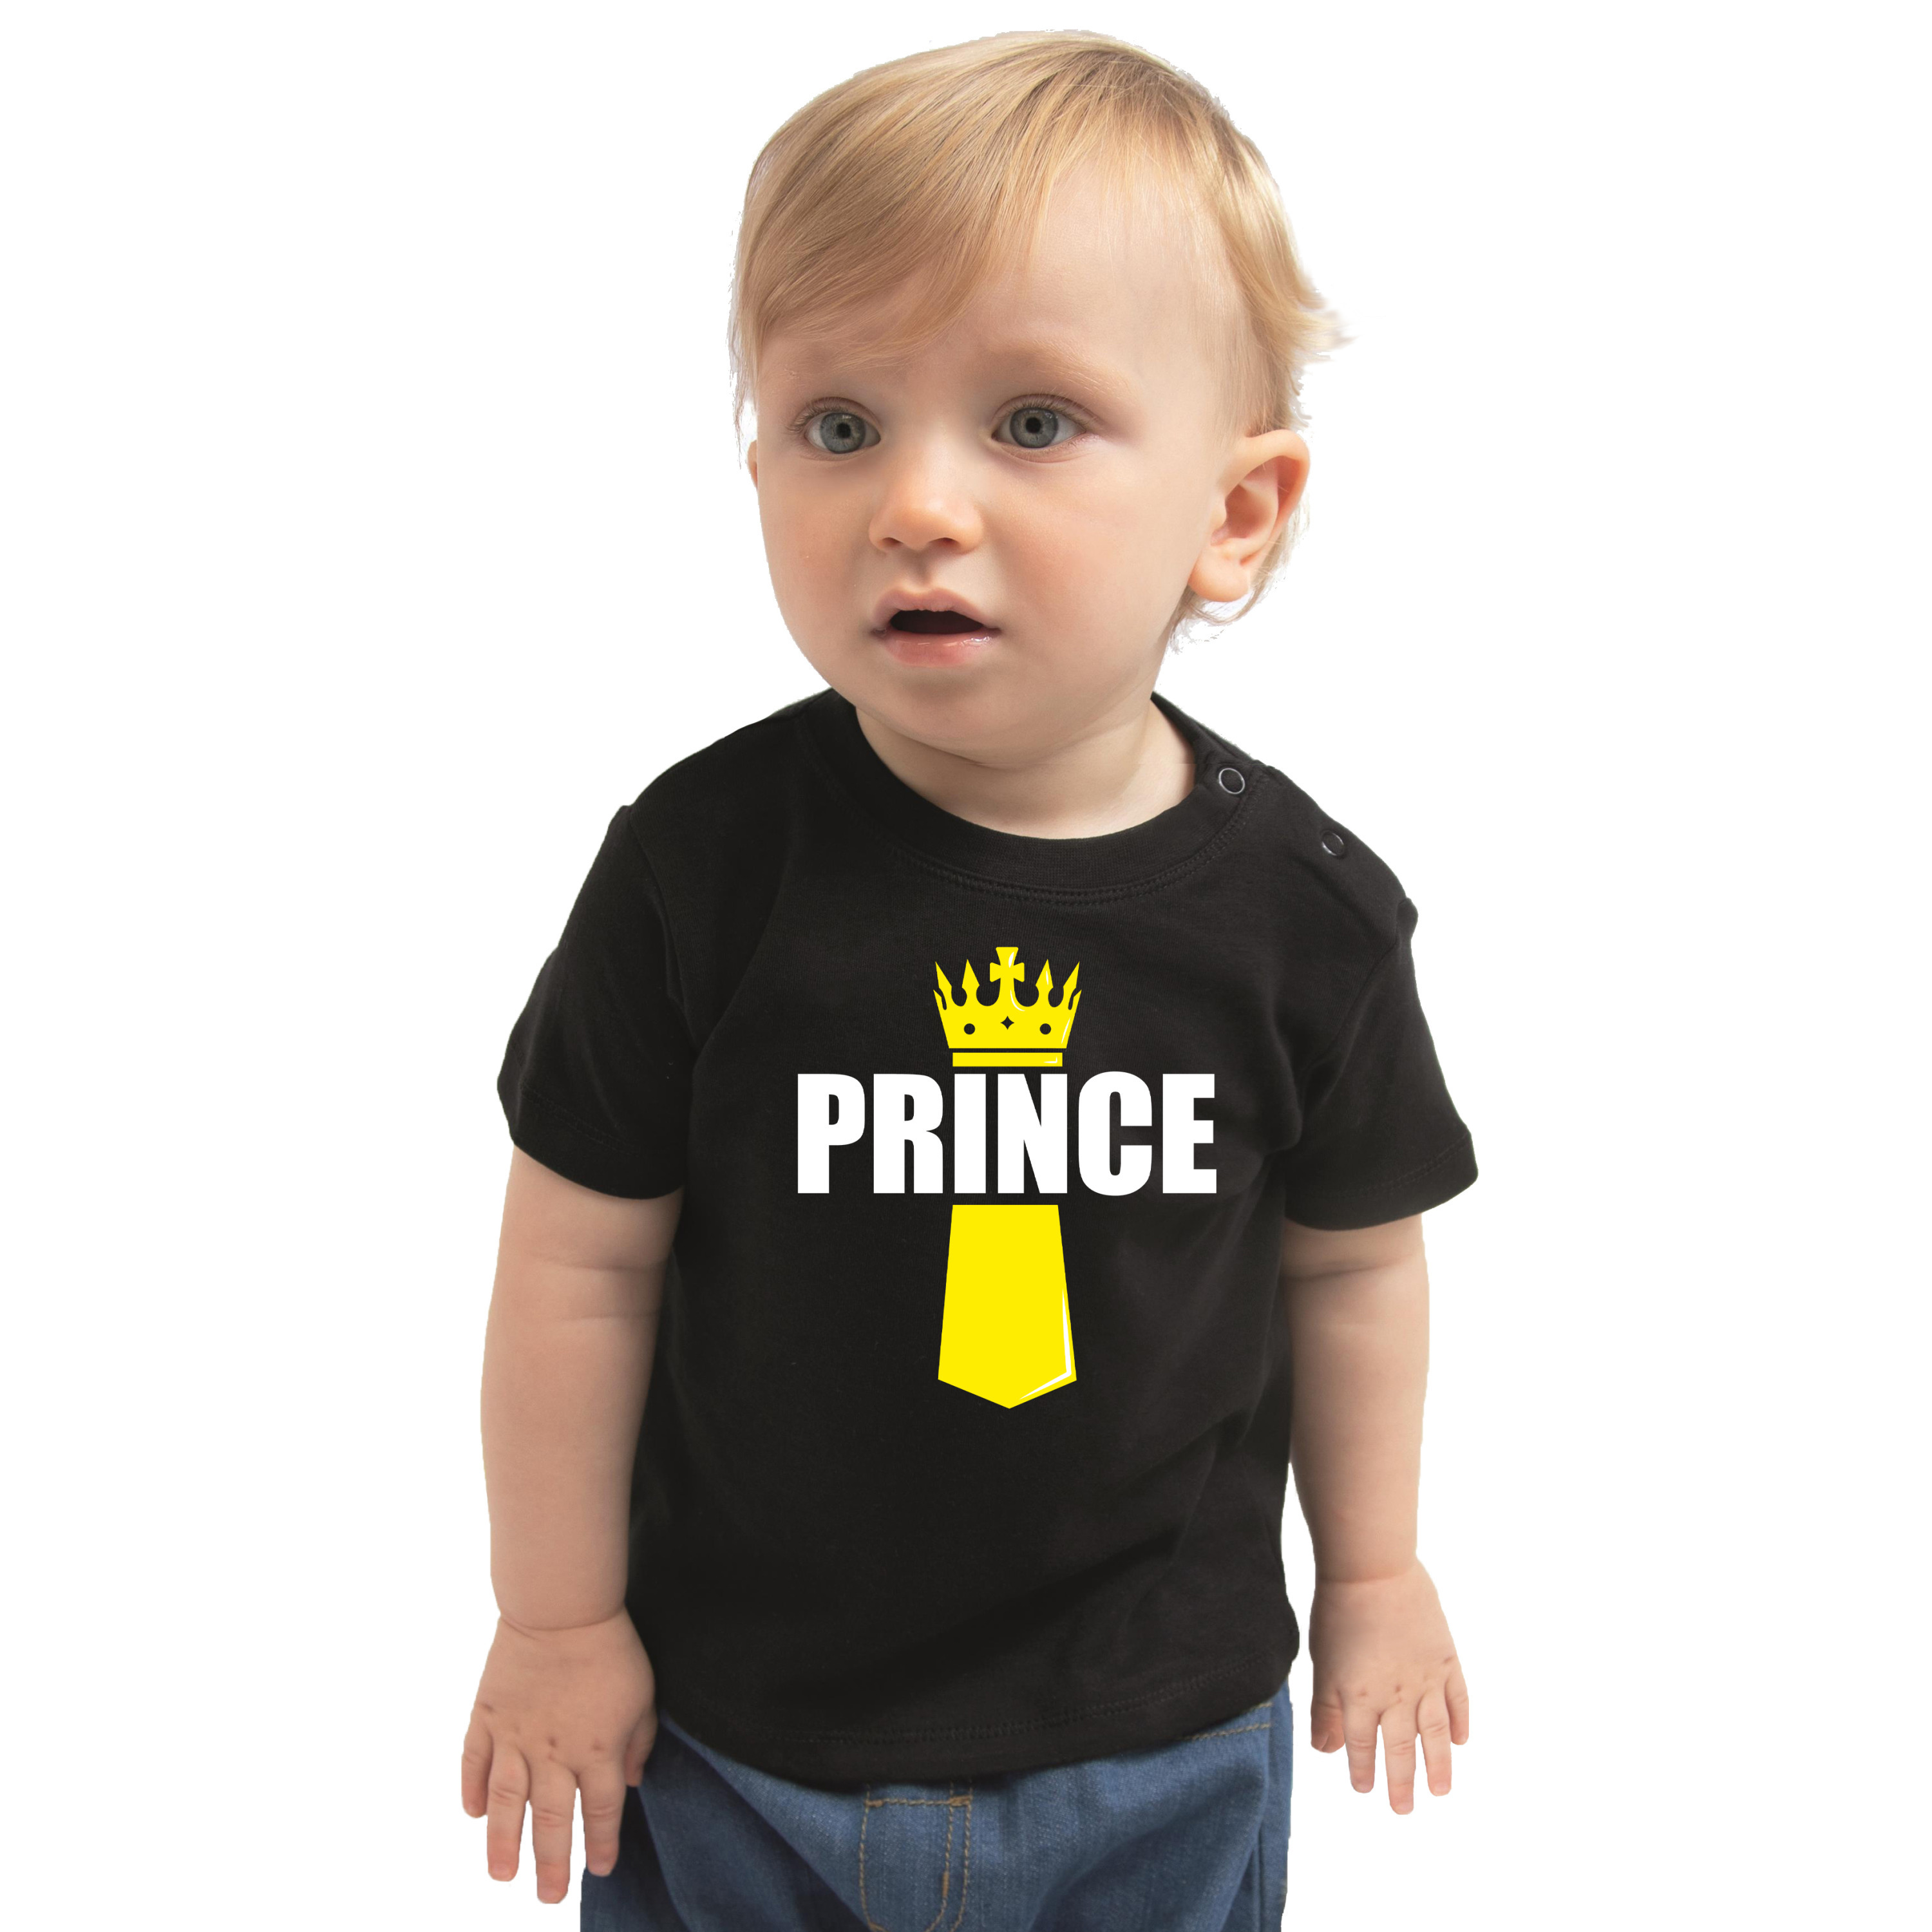 Koningsdag t-shirt Prince met kroontje zwart voor babys